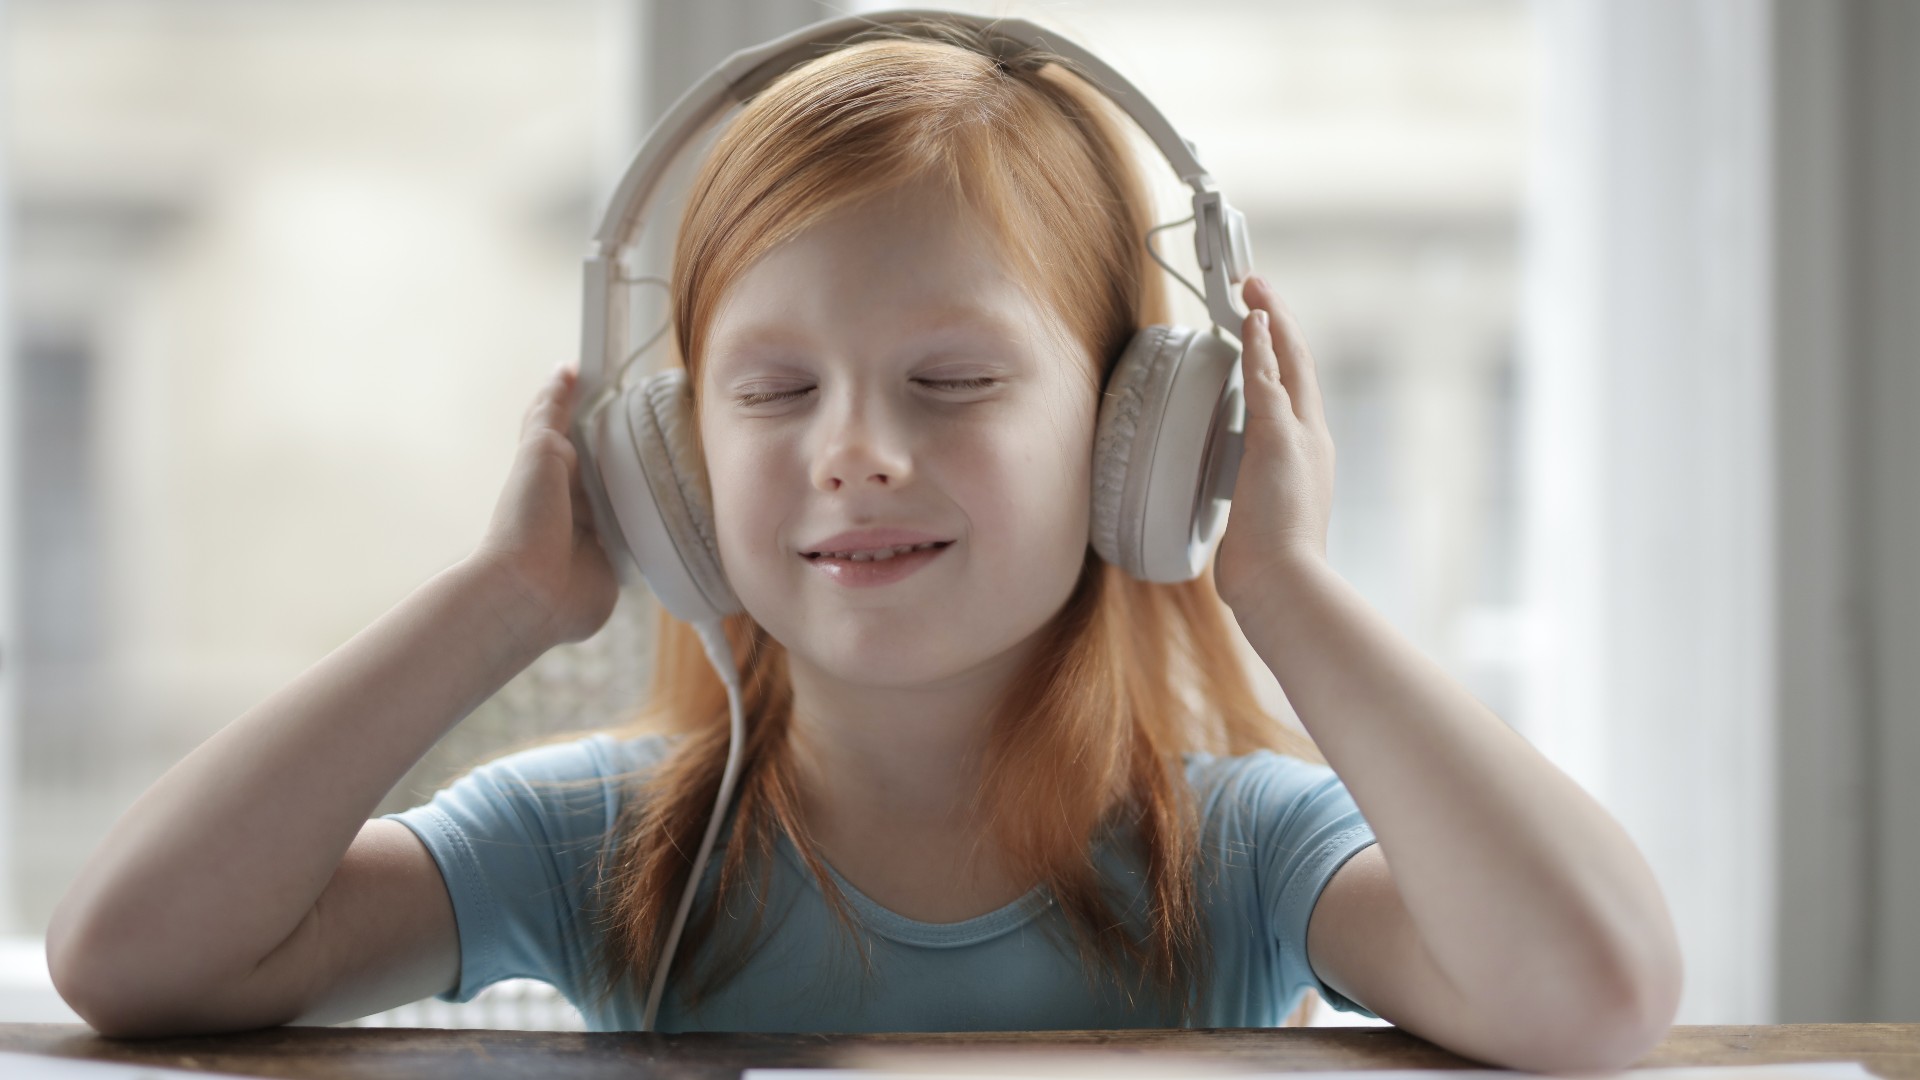 Foto de capa do artigo "Música para bebês e crianças: qual escolher? Veja benefícios"